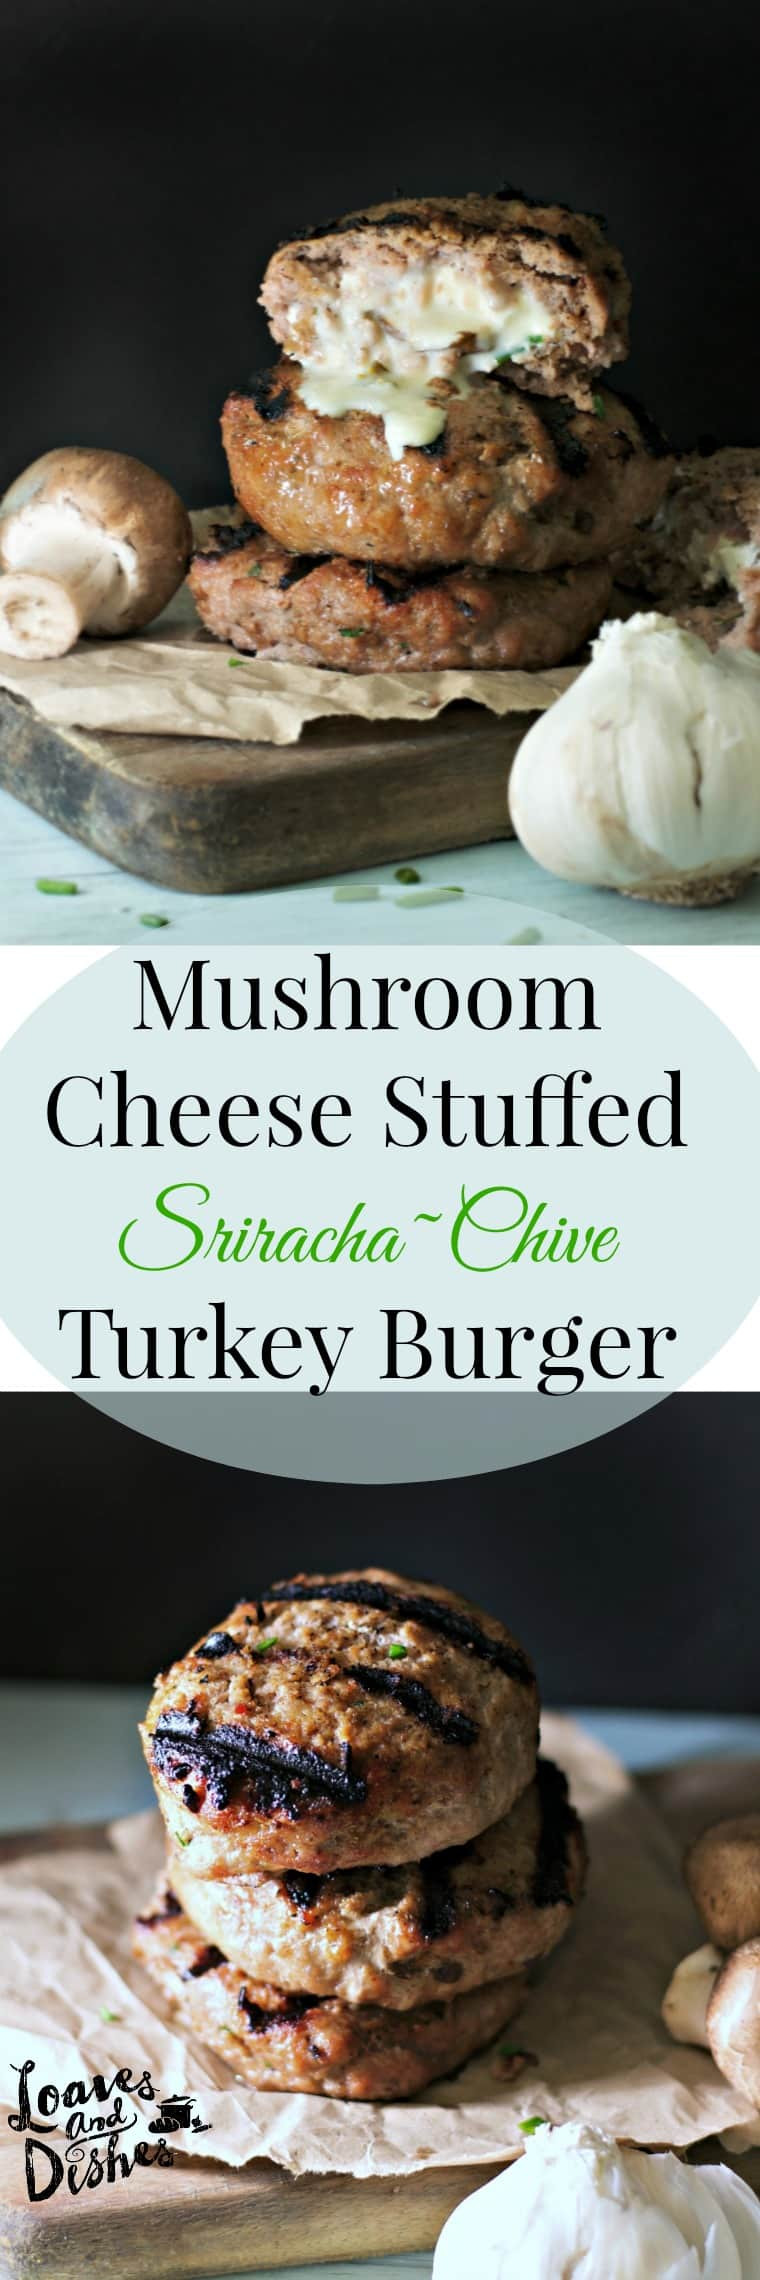 Ground Turkey Burgers Recipe
 Mushroom Cheese Stuffed Sriracha Chive Turkey Burgers